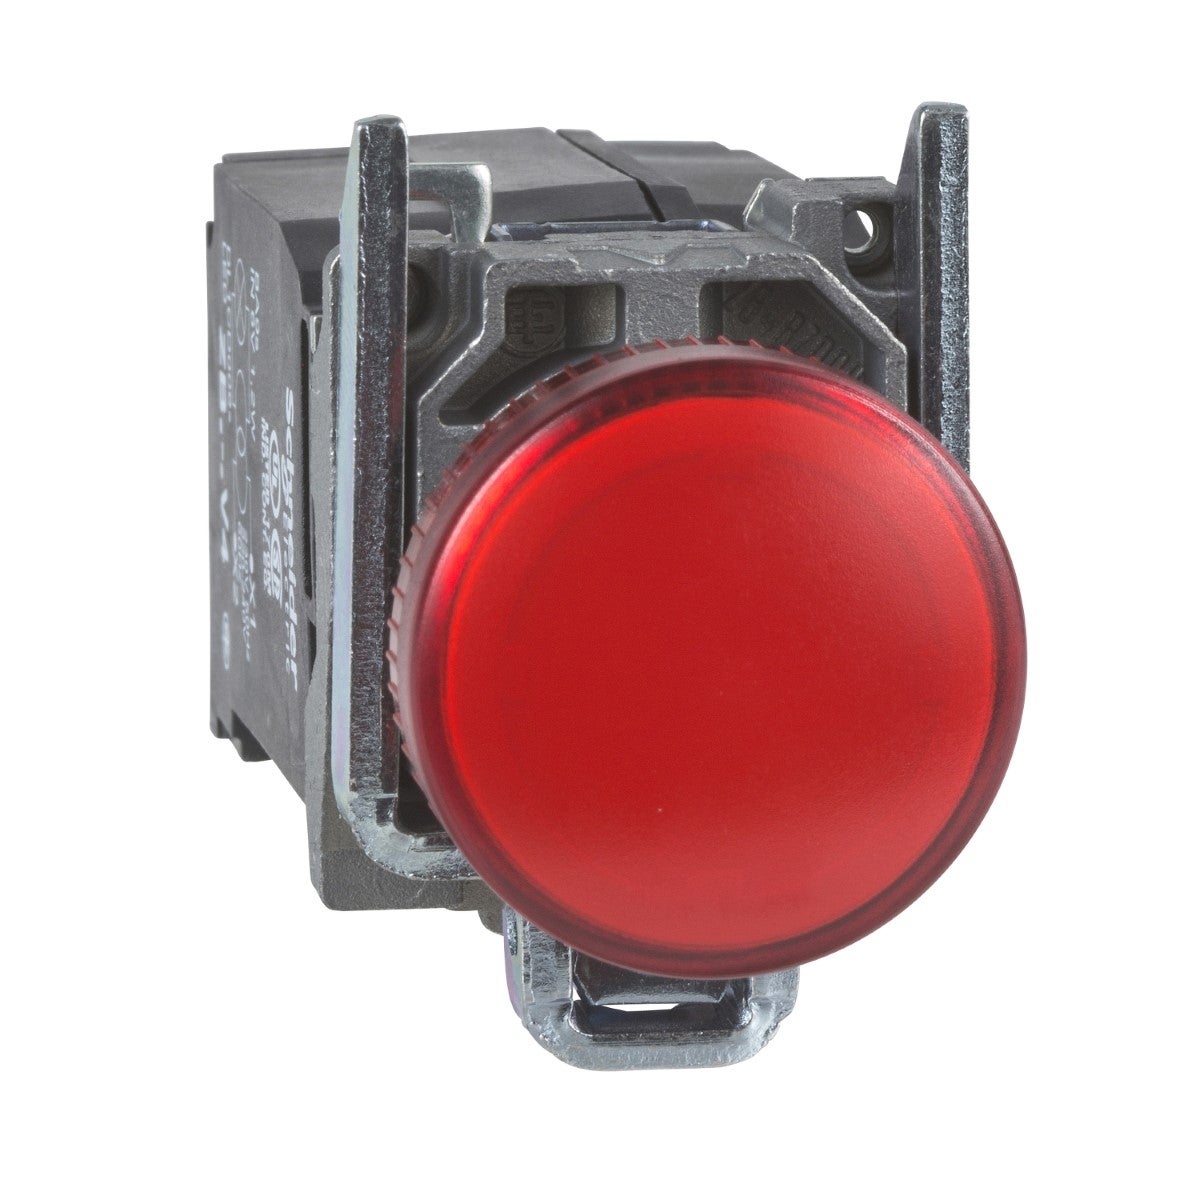 Pilot light, metal, red, Ã˜22, plain lens with BA9s bulb, 110â€¦120 V AC